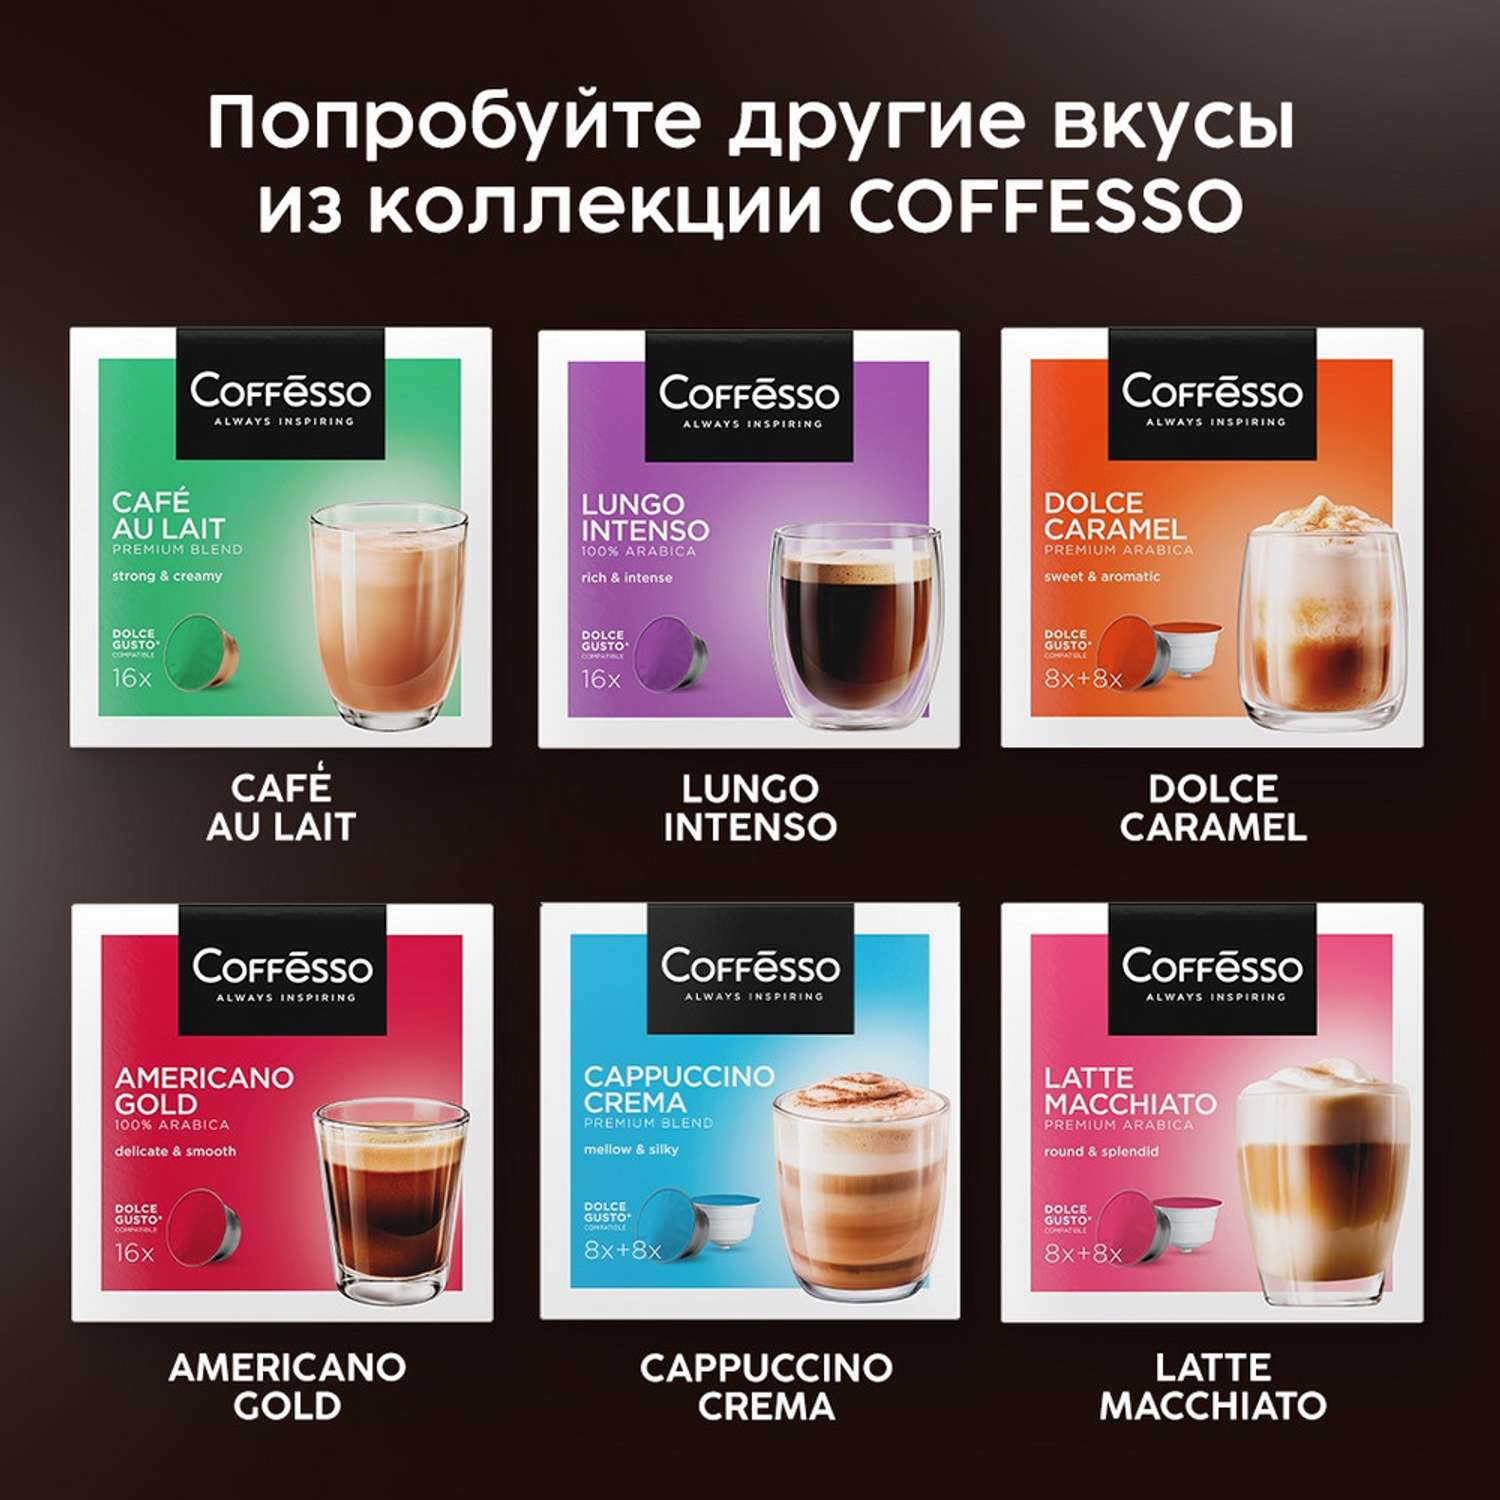 Кофе в капсулах Coffesso Espresso Barista 88г капсула - фото 9